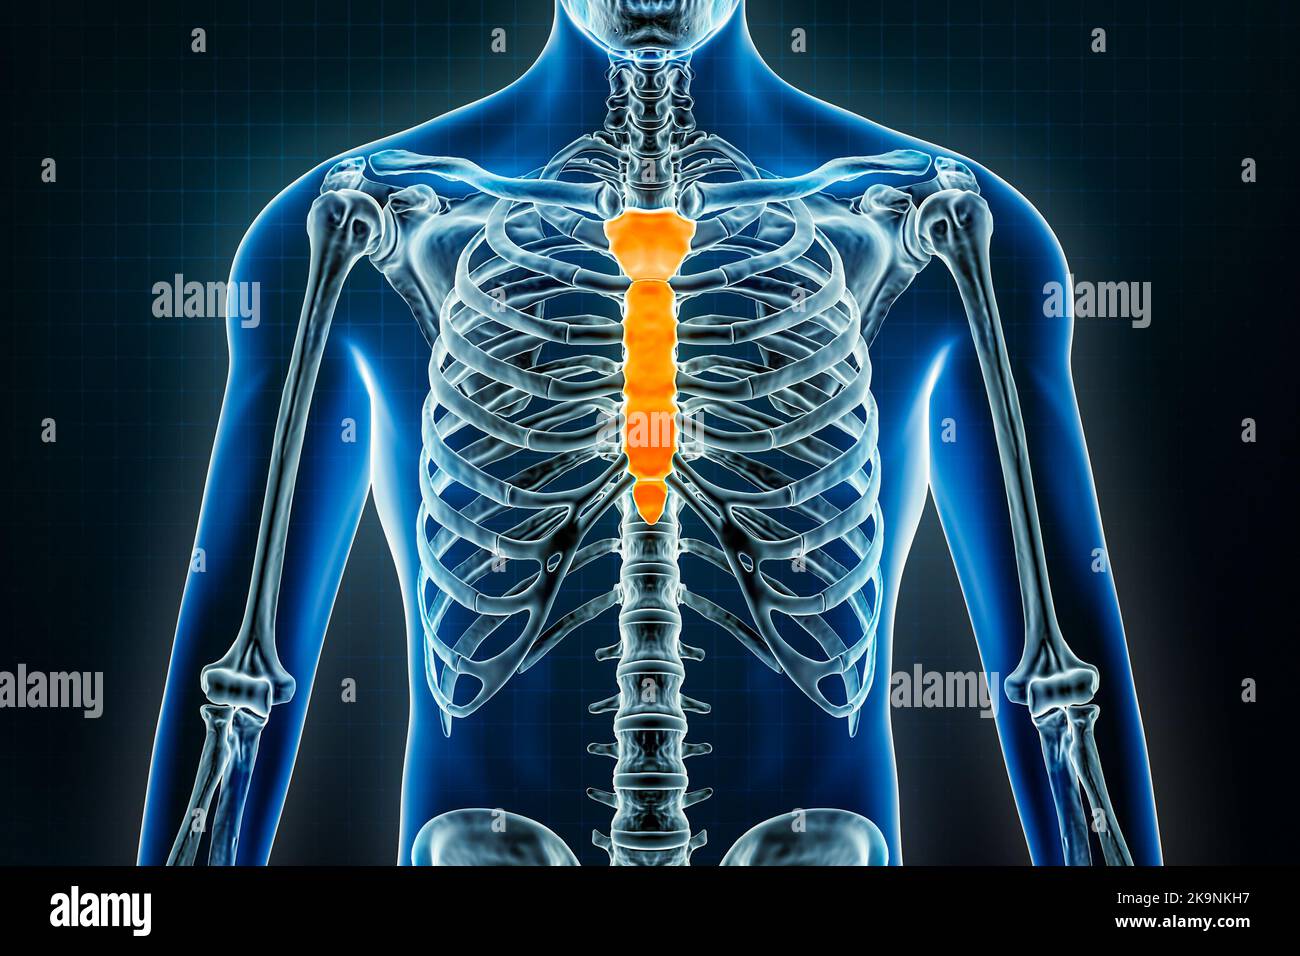 Röntgen von Brustbein- oder Brustbein- und Manubriumknochen. Osteologie des menschlichen Skeletts 3D Rendering Illustration. Anatomie, Medizin, Wissenschaft, Biologie, Gesundheit Stockfoto